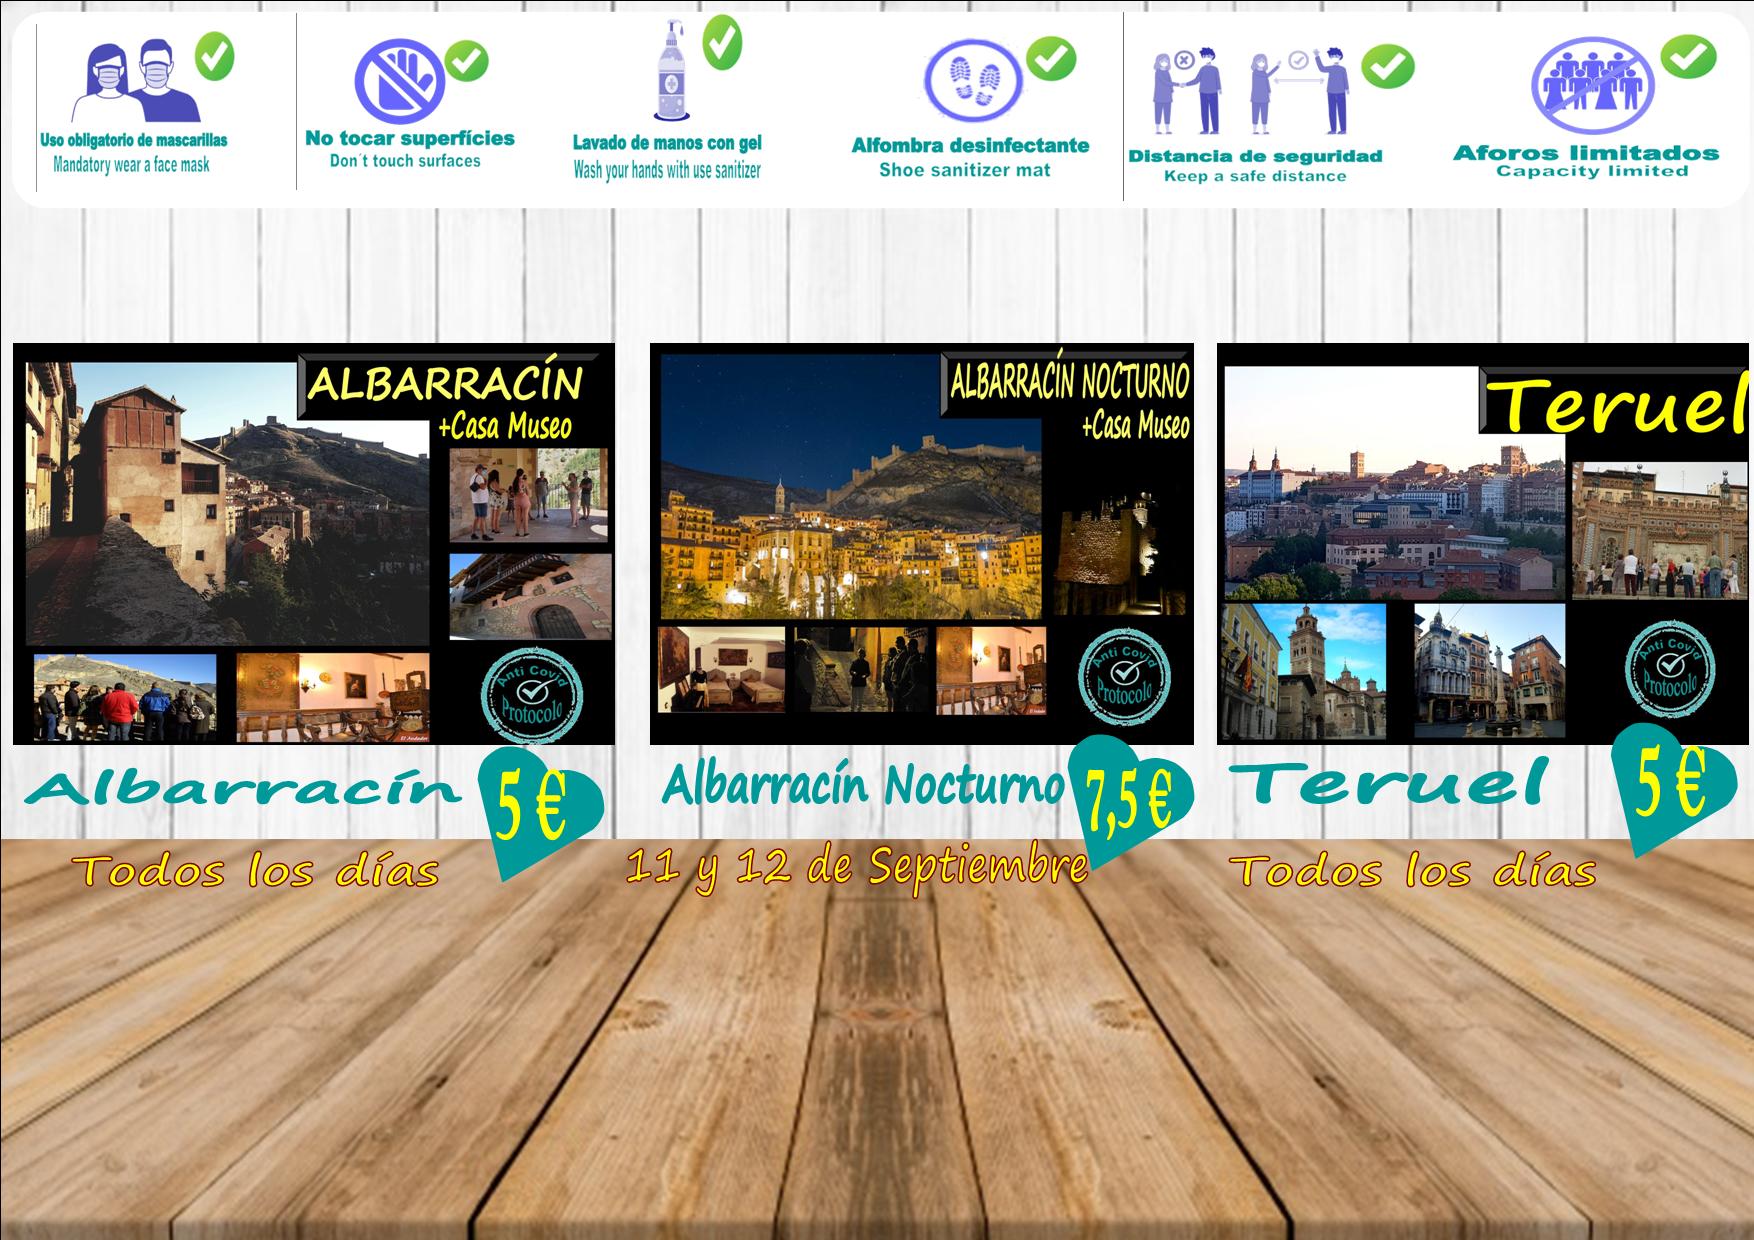 Planes para ti en Albarracín y Teruel…viernes y sábado, Albarracín Nocturno! (Aforos más reducidos, reserva tu plaza)